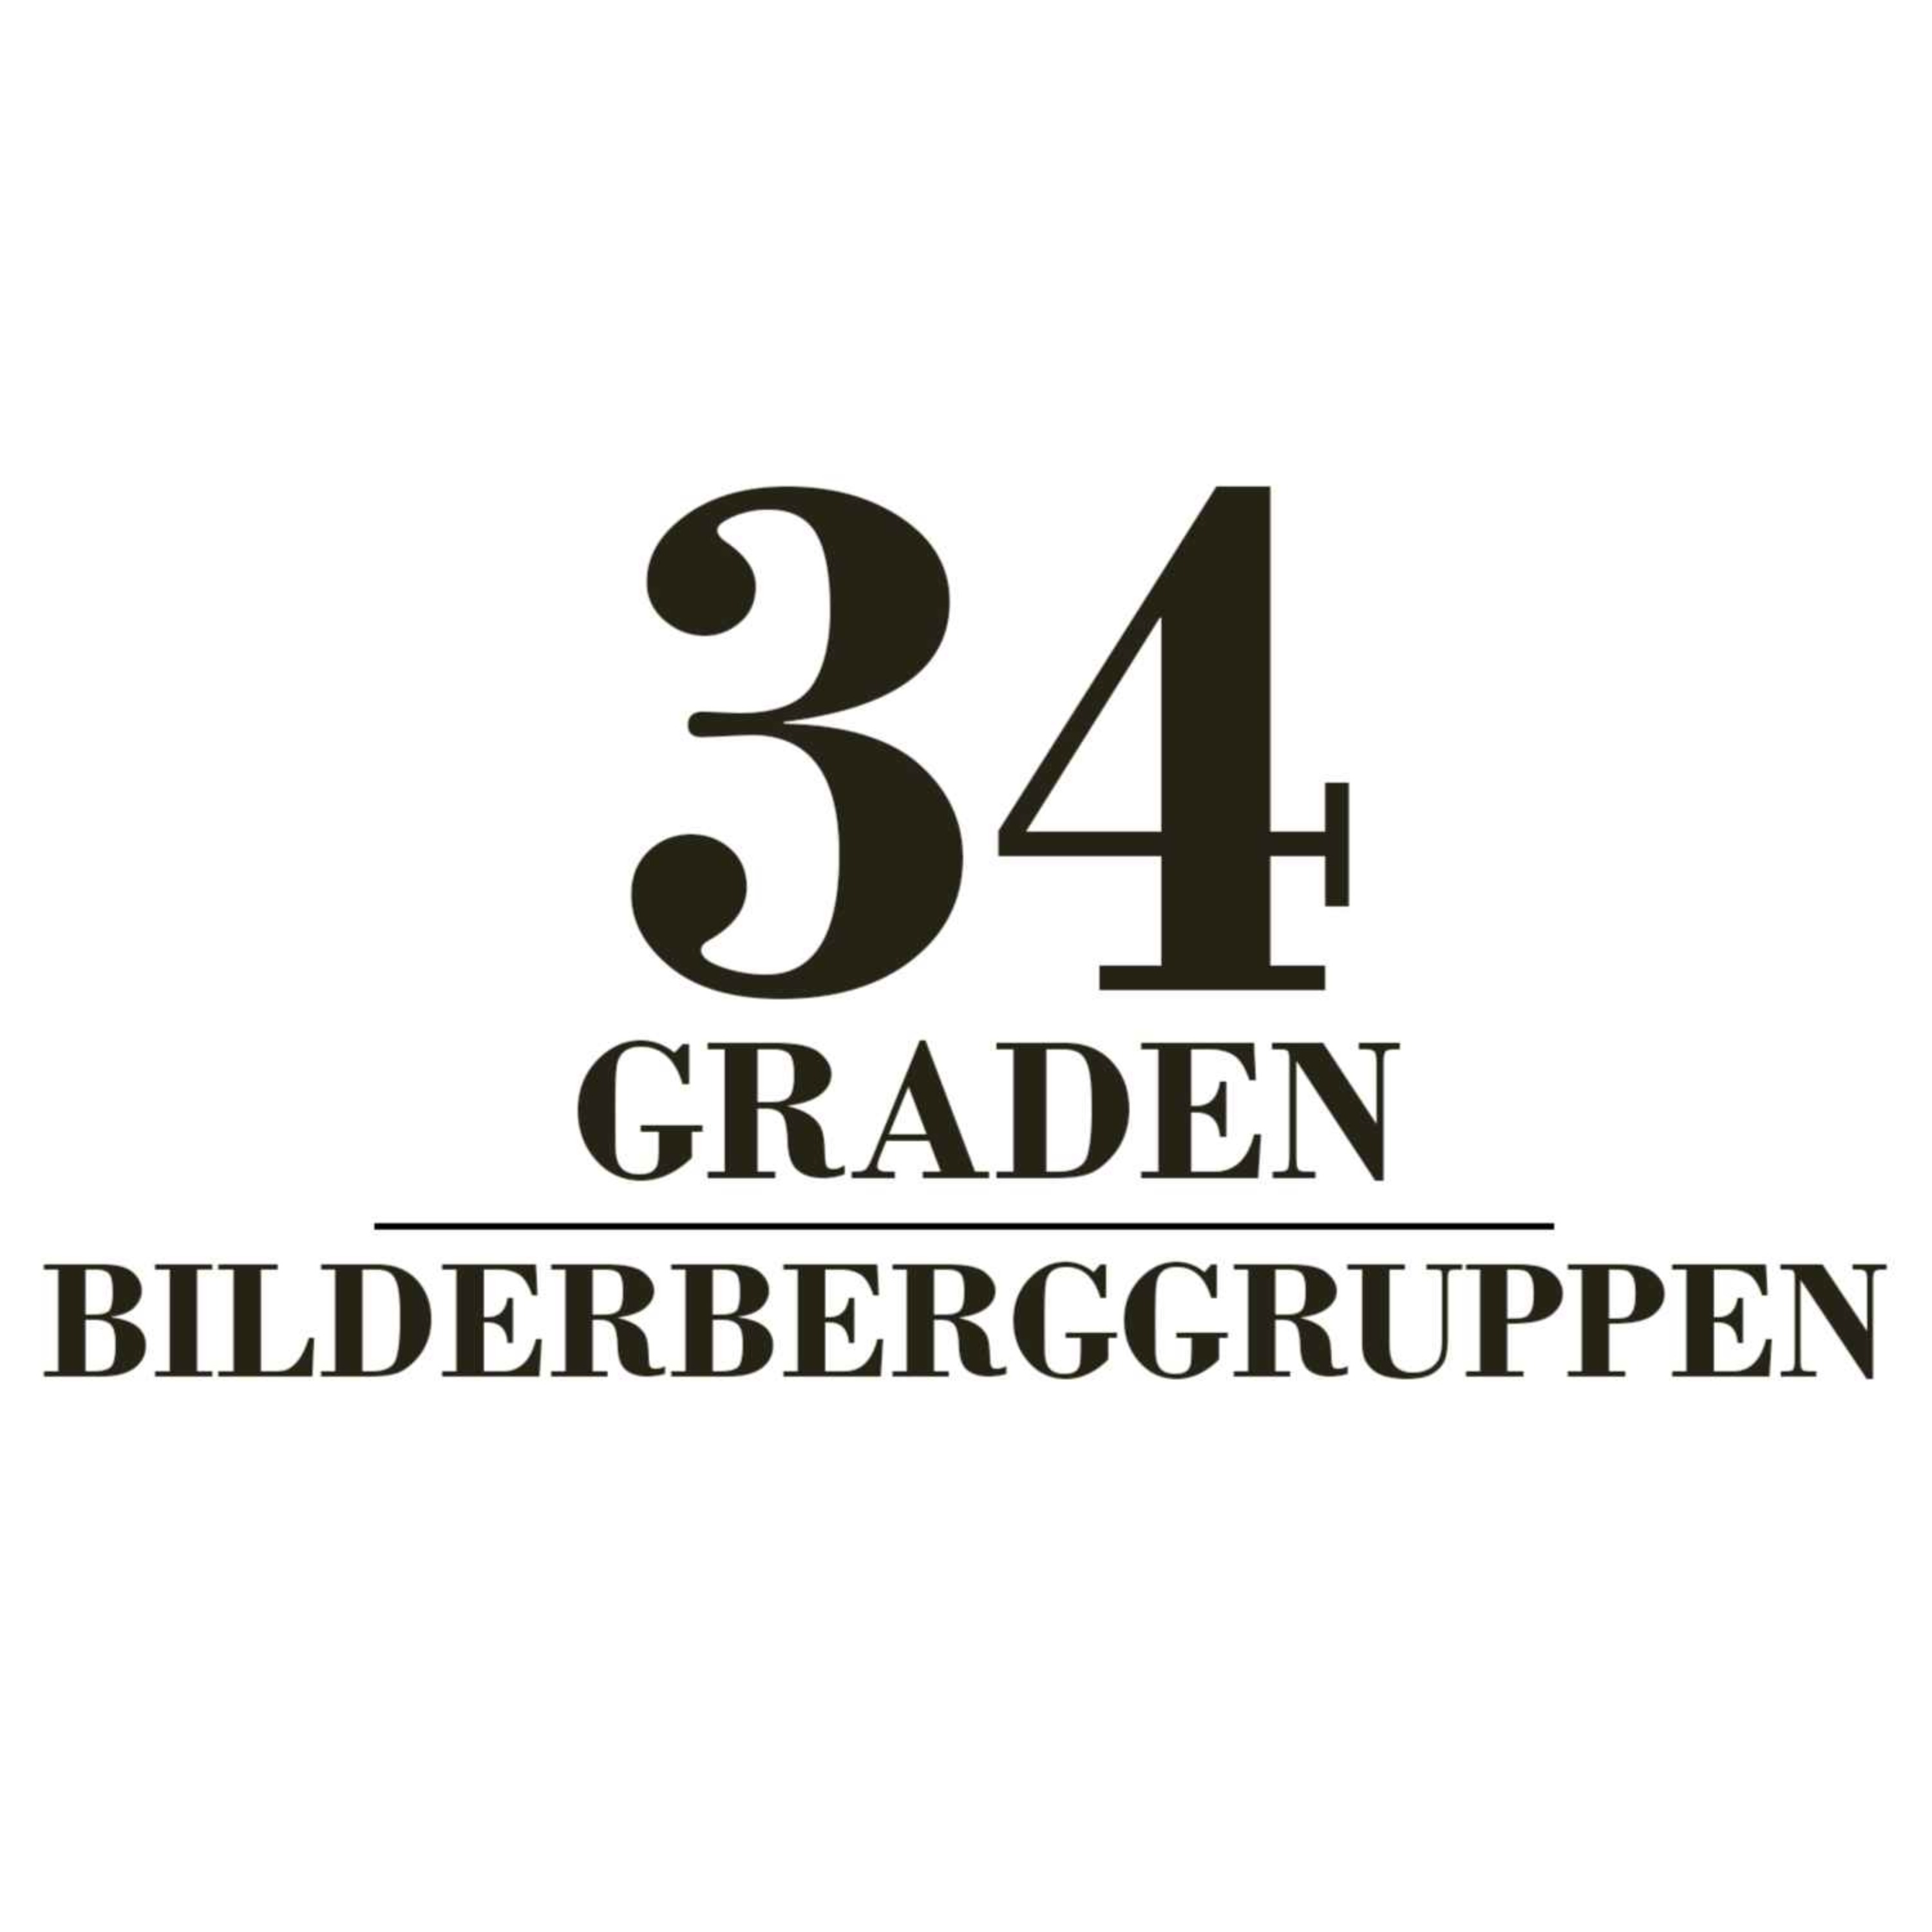 Bilderberggruppen